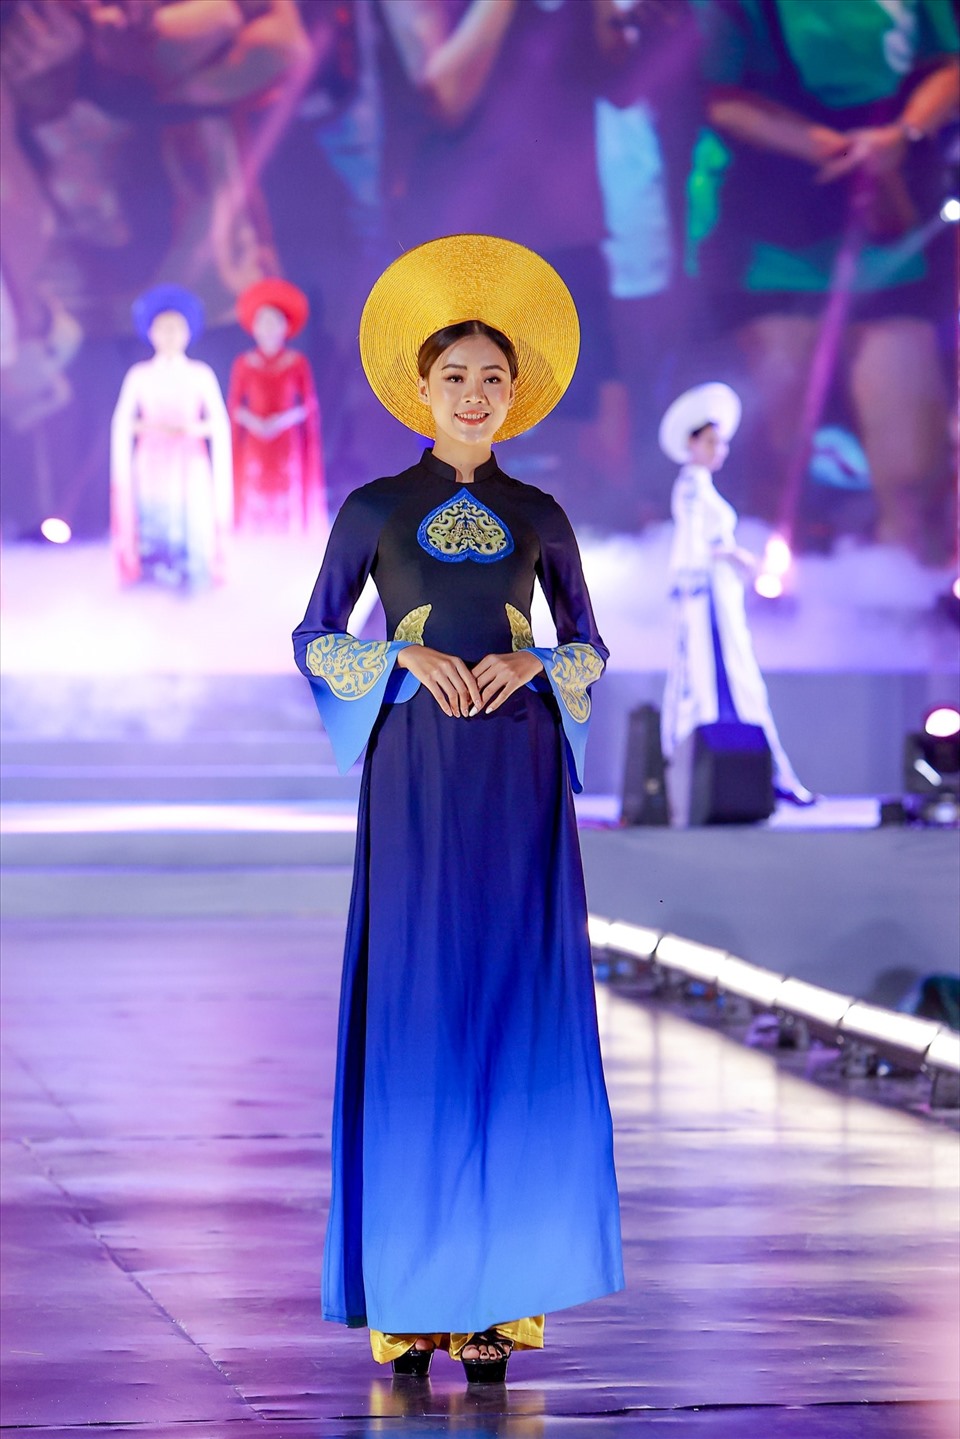 Lễ hội Áo dài: Hãy đến tham gia Lễ hội Áo dài tuyệt đẹp để trải nghiệm vẻ đẹp và sự duyên dáng của trang phục truyền thống của người Việt. Bạn sẽ được đắm mình trong không khí lễ hội và chụp lại những bức ảnh đầy ấn tượng.